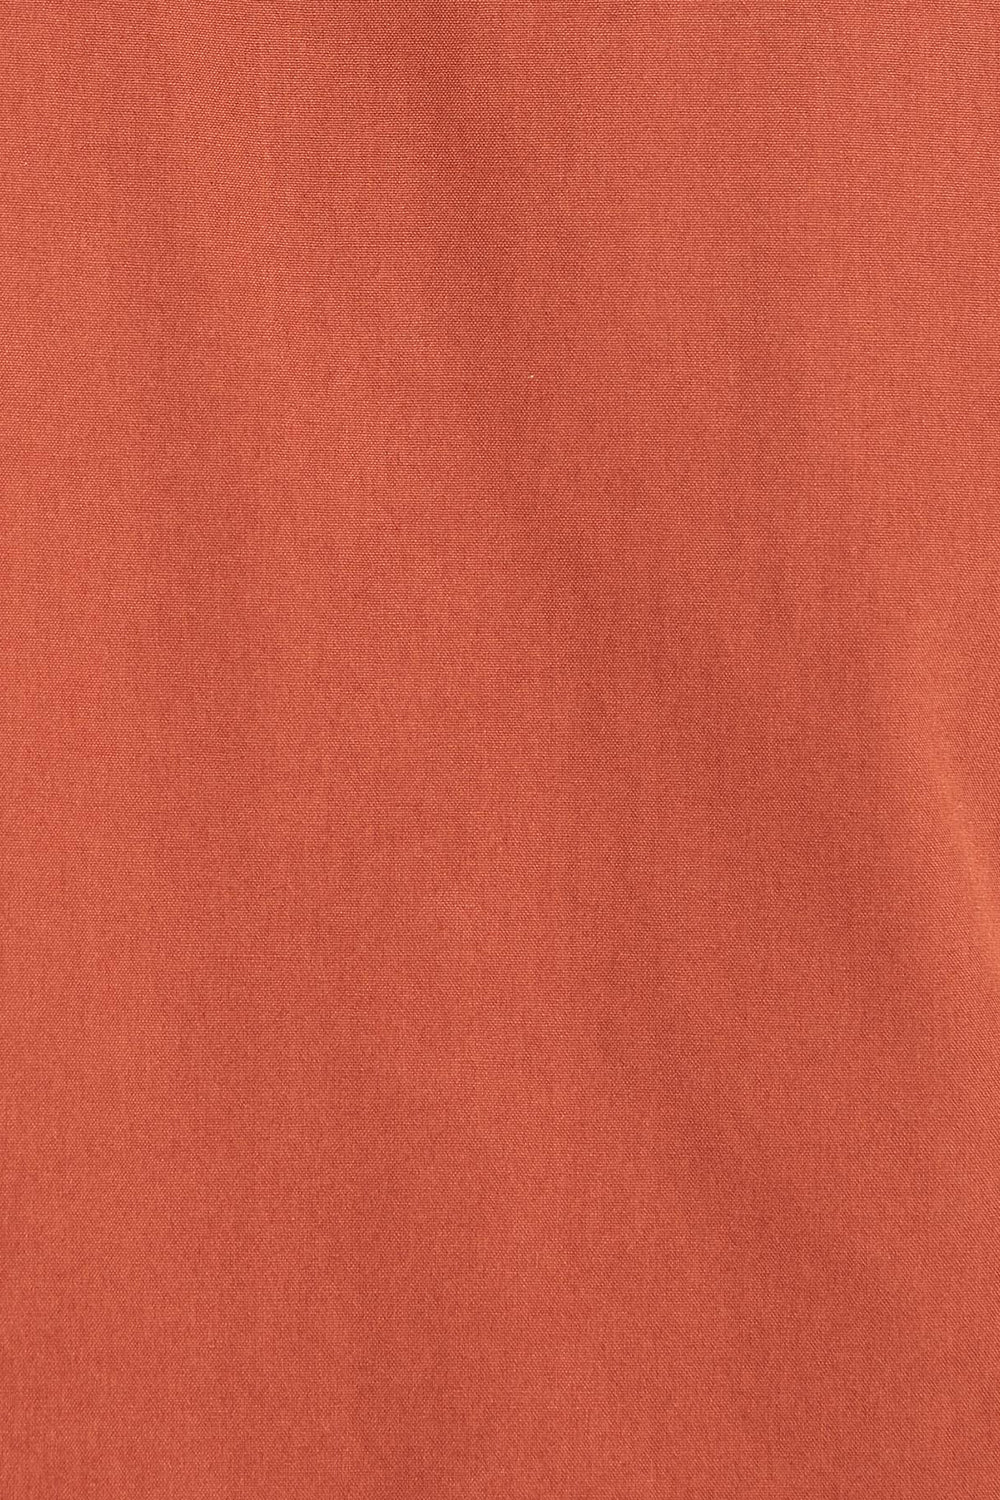 Barbour White Label Lorenzo Overshirt (Rust)